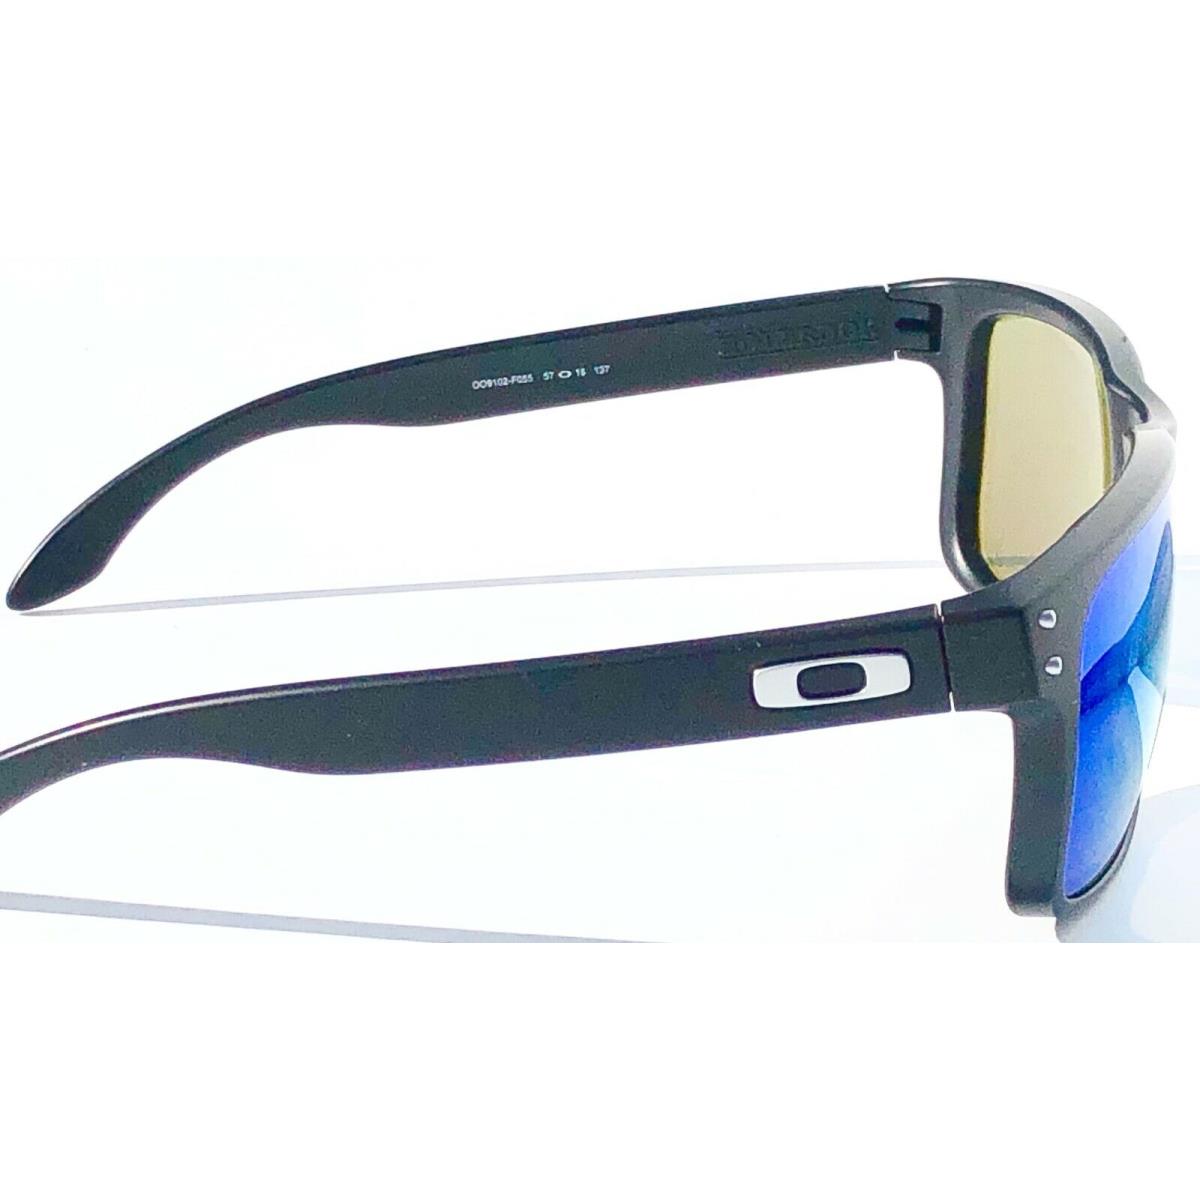 Oakley sunglasses Holbrook - Black Frame, Blue Lens 10